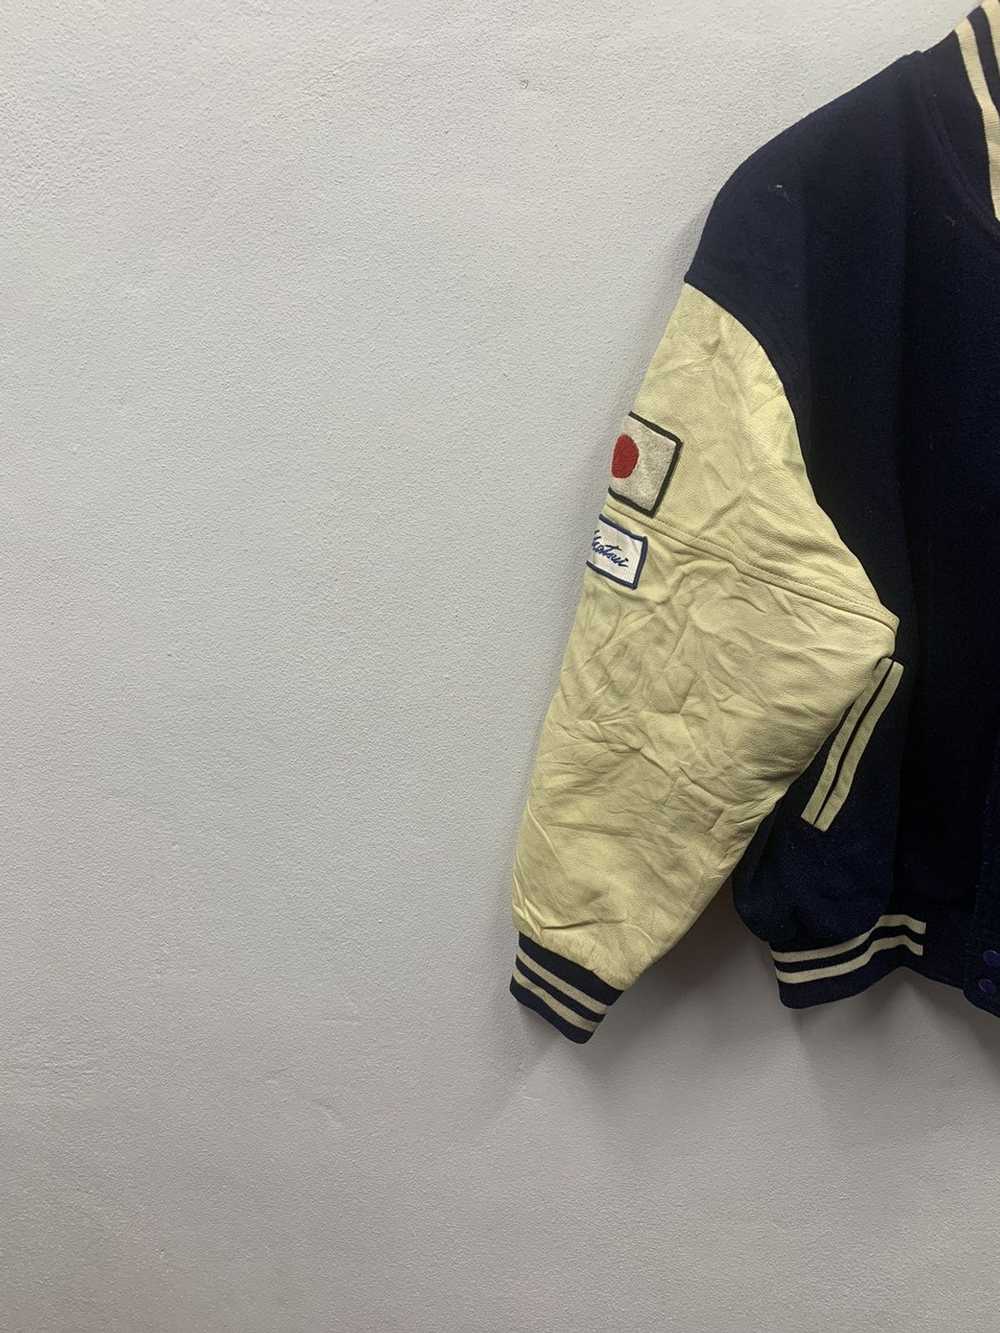 Hockey × Leather Jacket × Varsity Jacket Vintage … - image 5